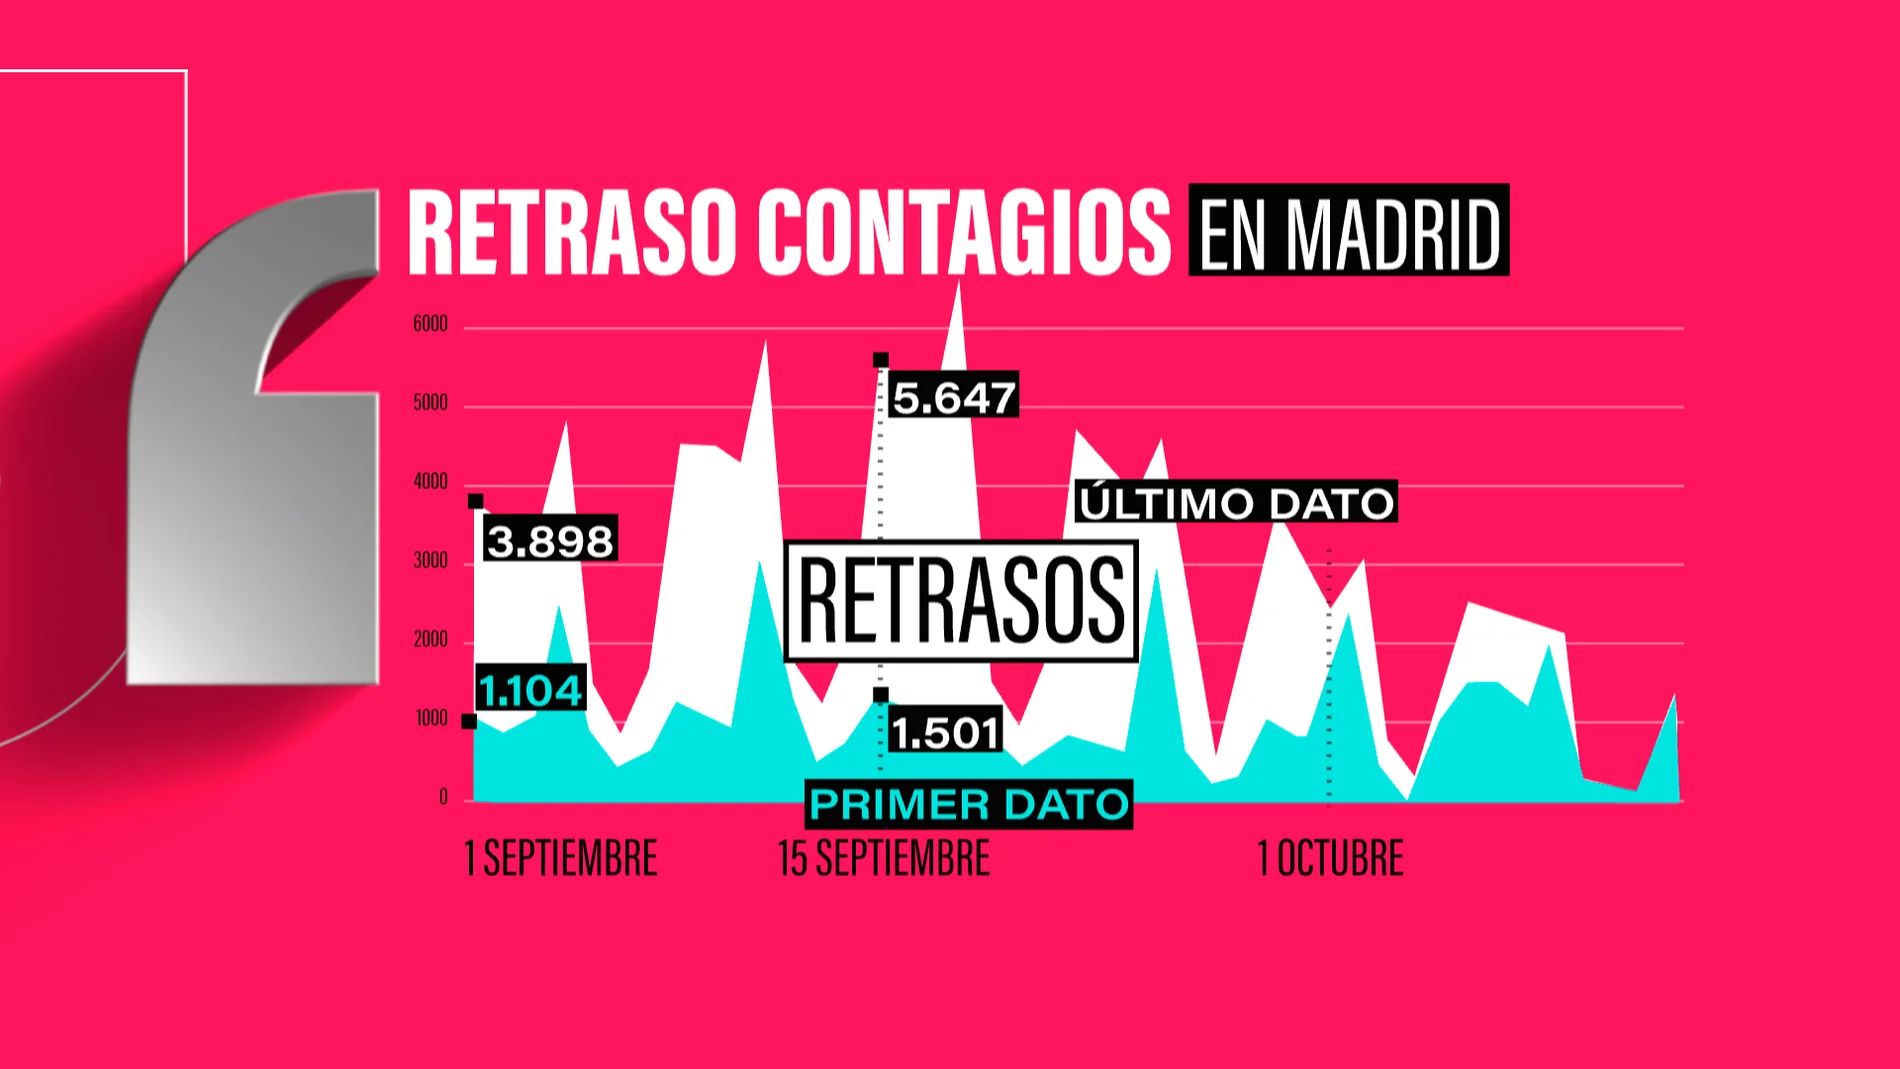 El gráfico demuestra el baile de cifras en los dato que registra la Comunidad de Madrid diariamente.